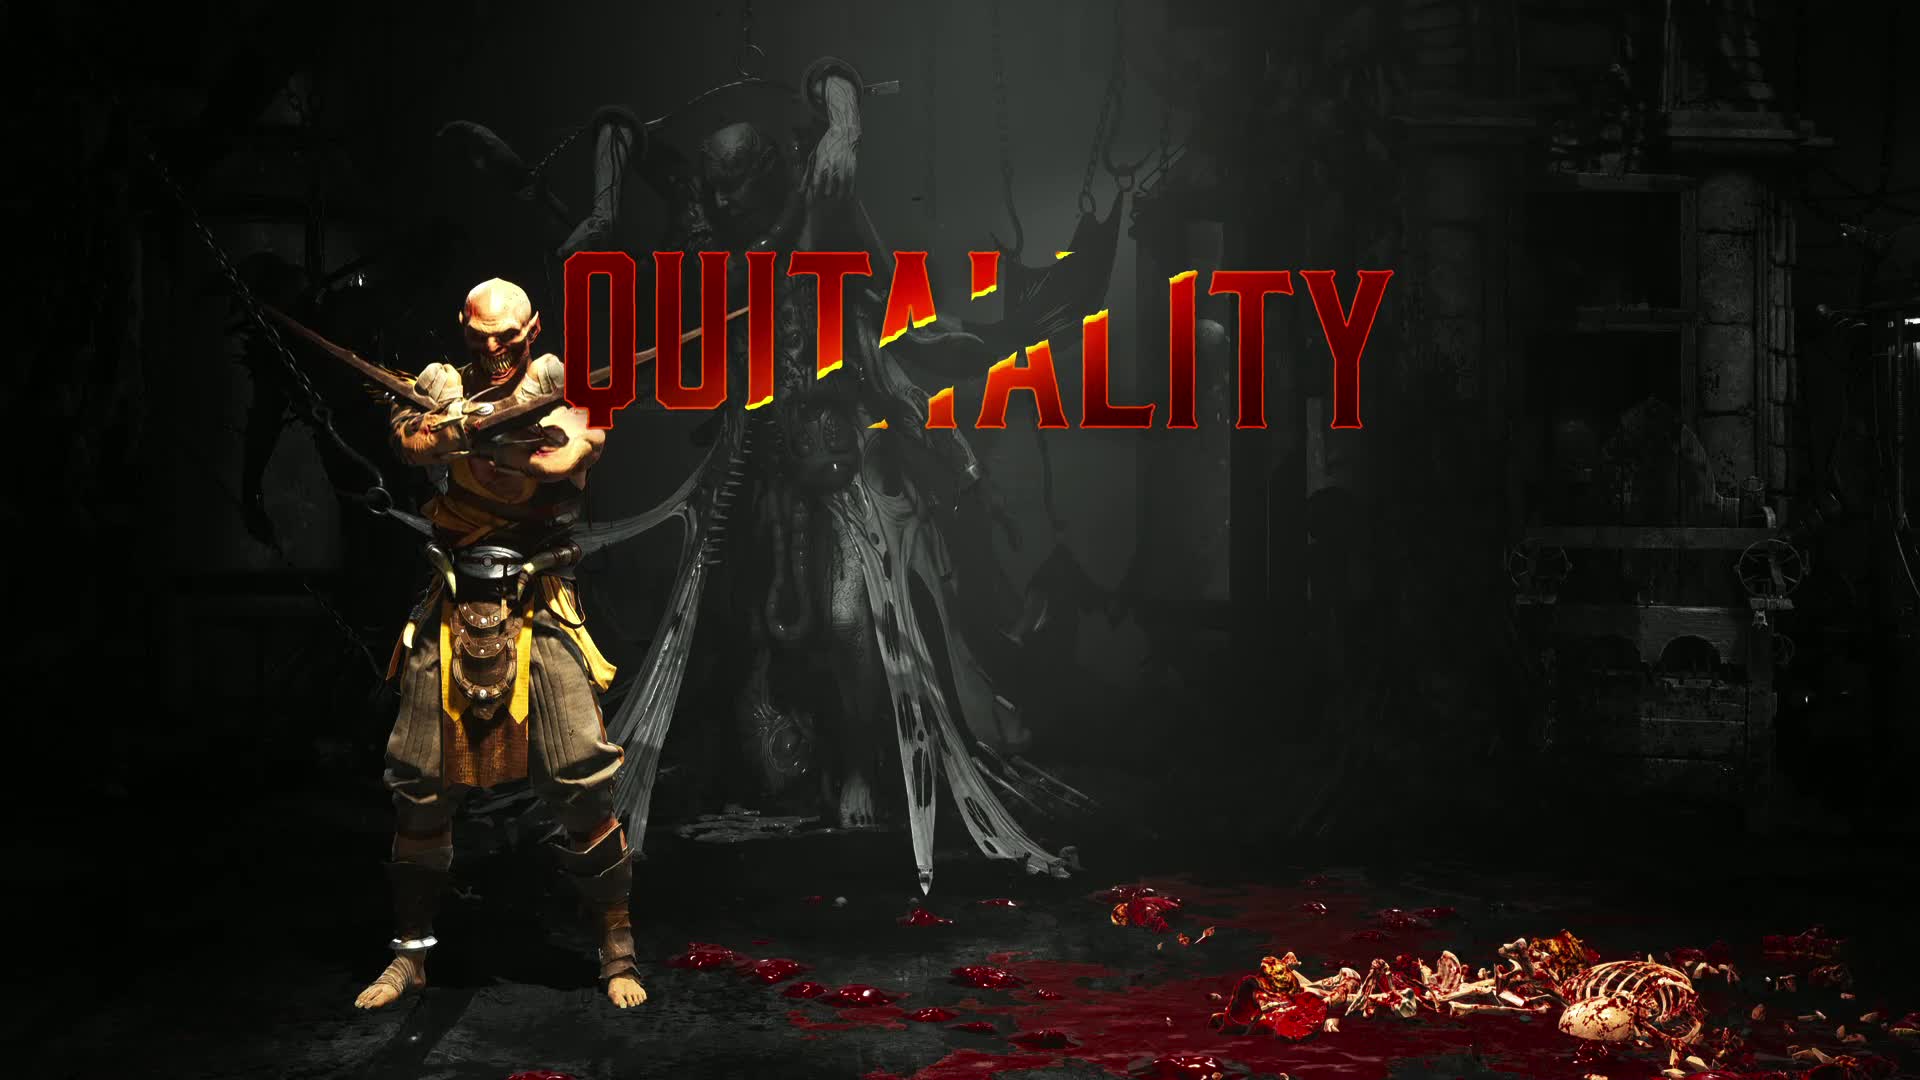 Mortal Kombat X - All Fatalities on Baraka *PC Mod* (1080p 60FPS) 